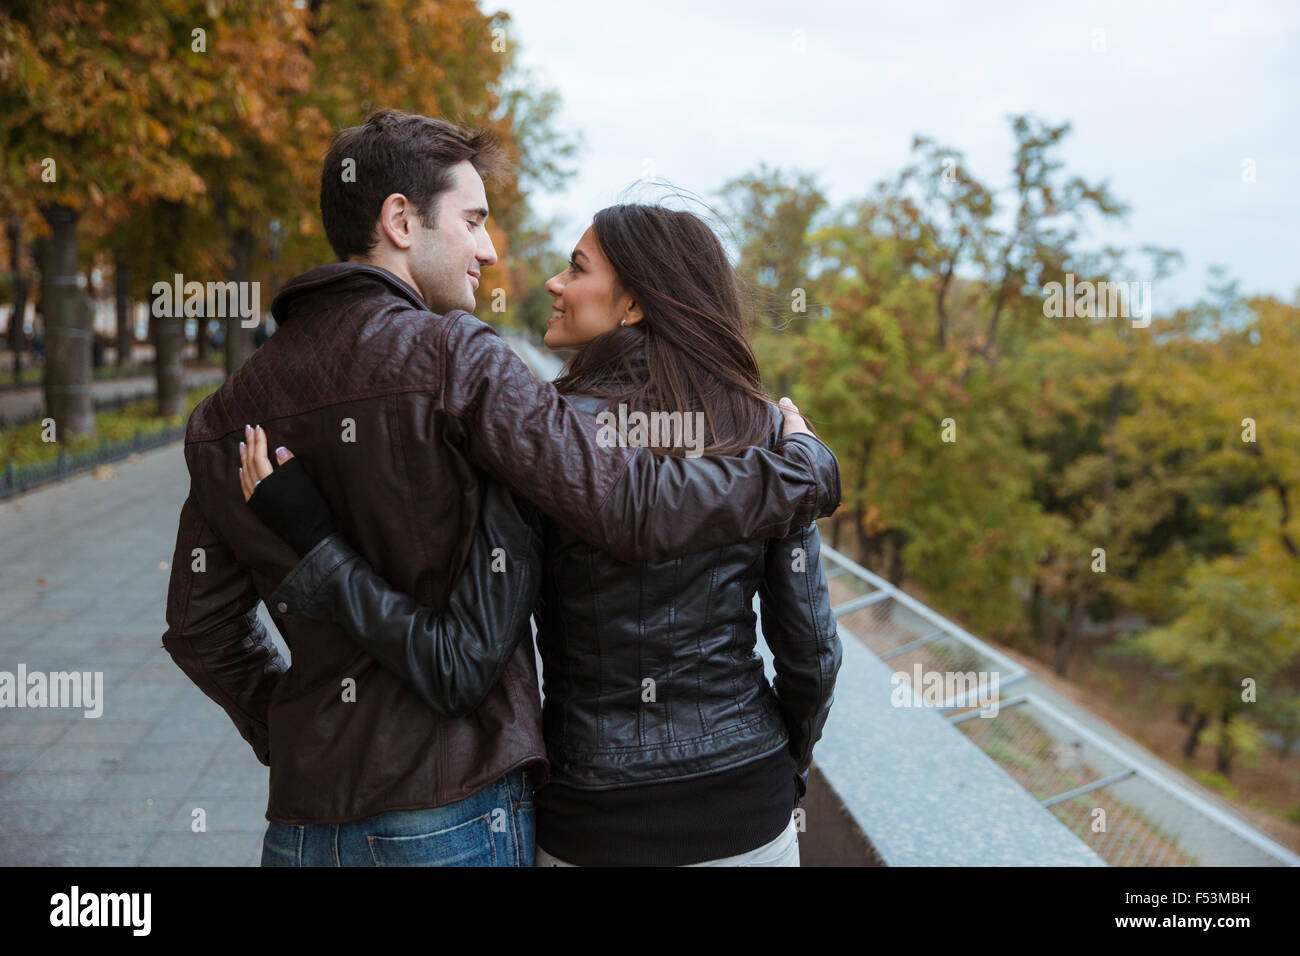 Vista posterior retrato de una pareja sonriente caminando en el parque de otoño Foto de stock